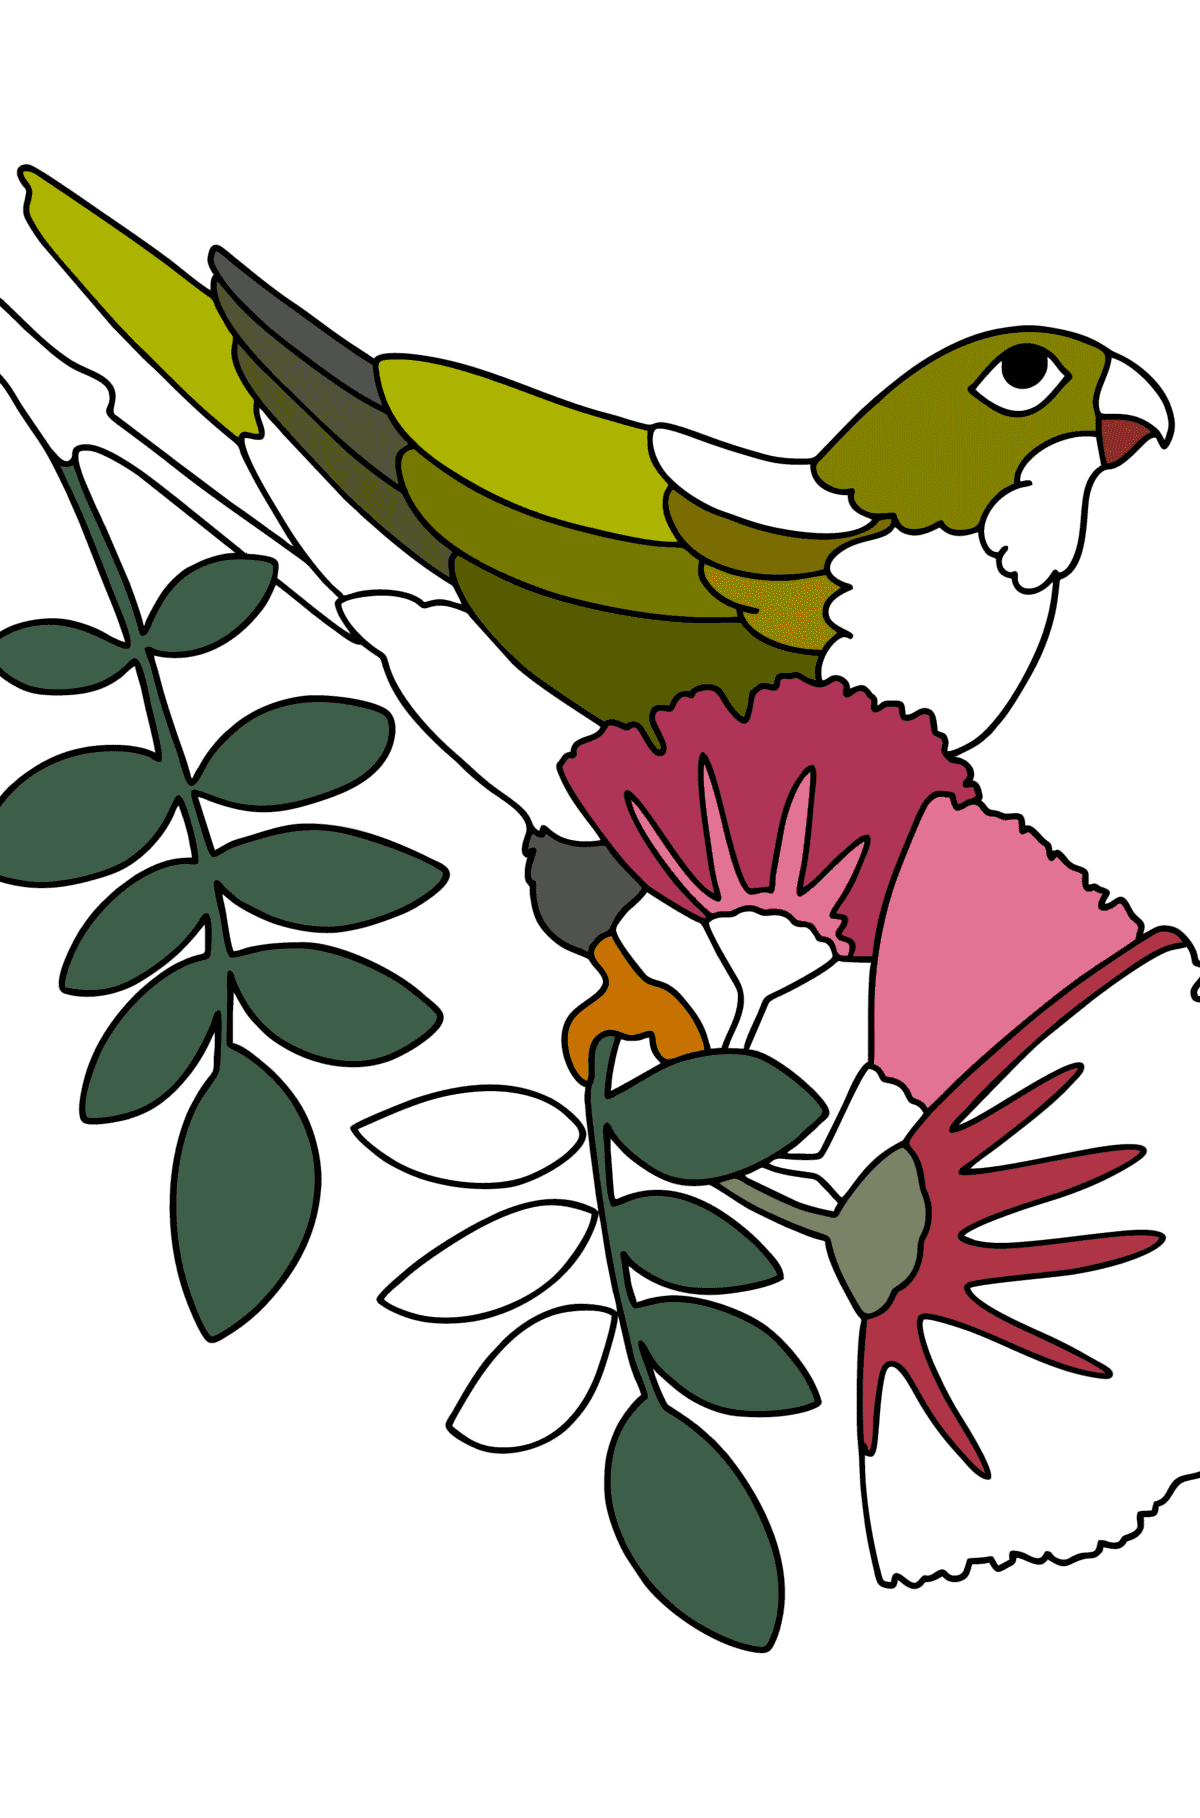 Disegno da colorare Giungla di pappagalli - Disegni da colorare per bambini